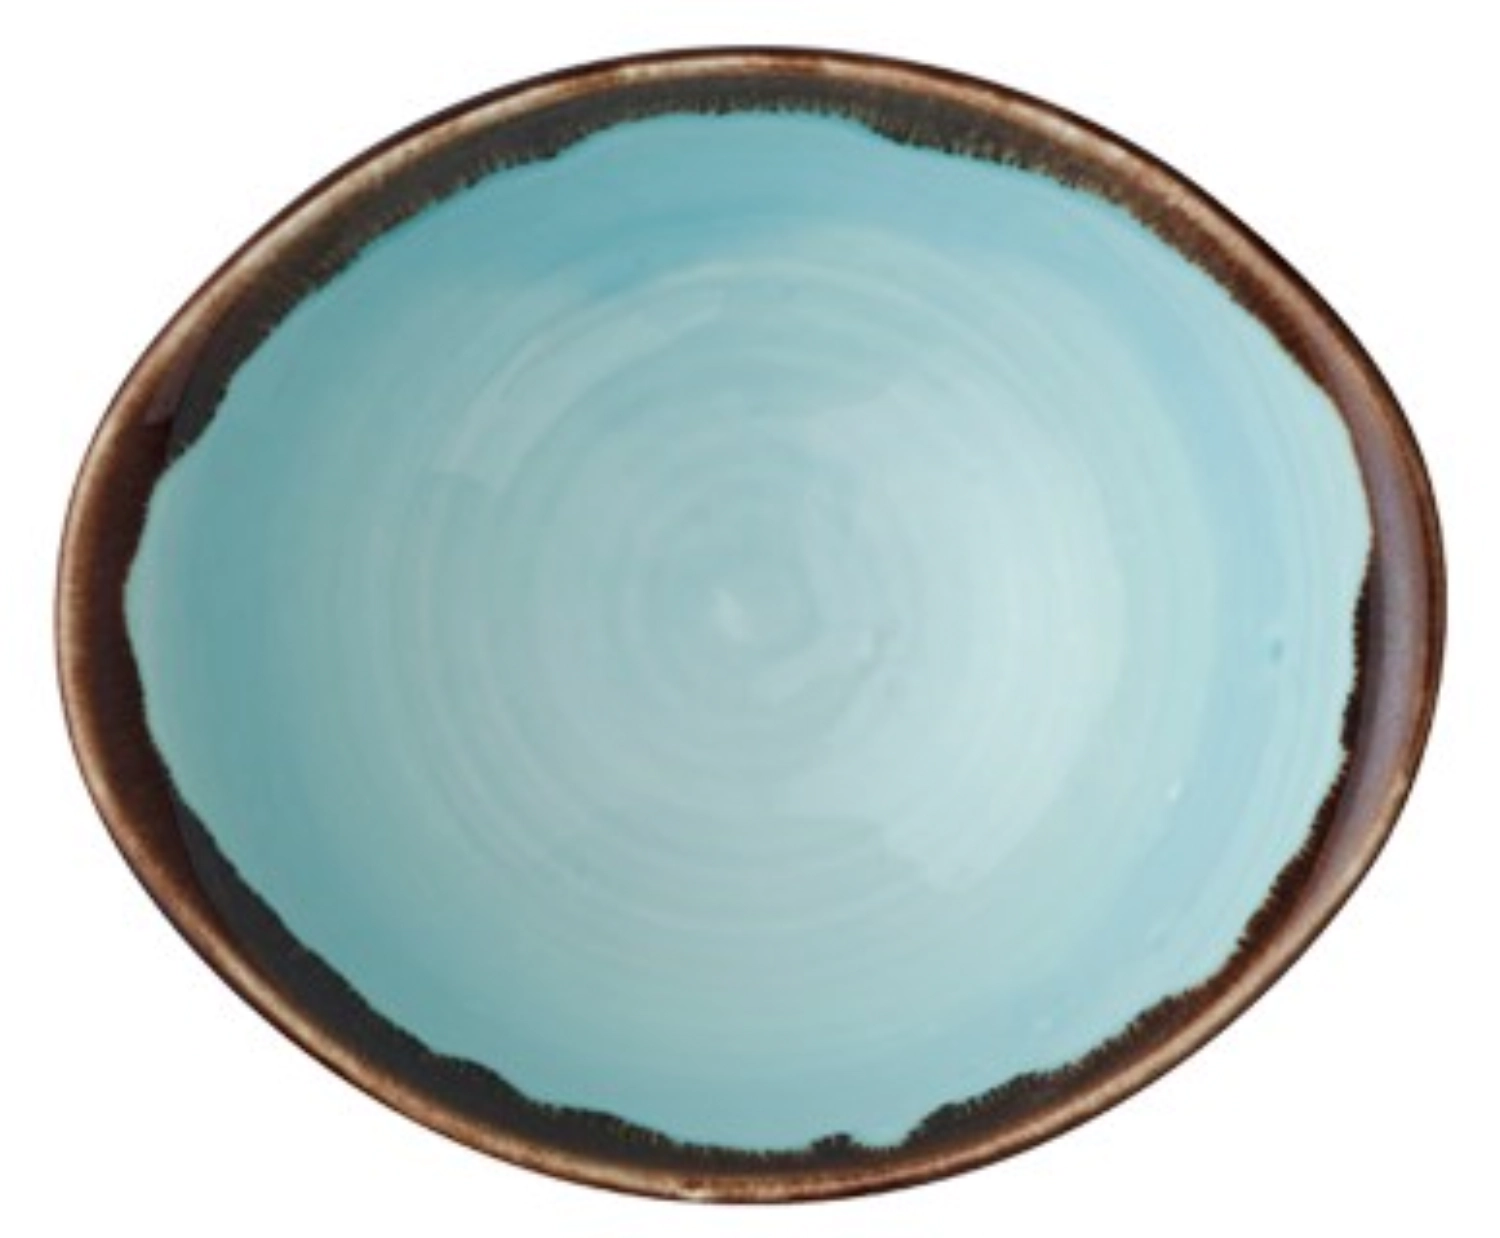 Harvest Turquoise Schüssel tief oval